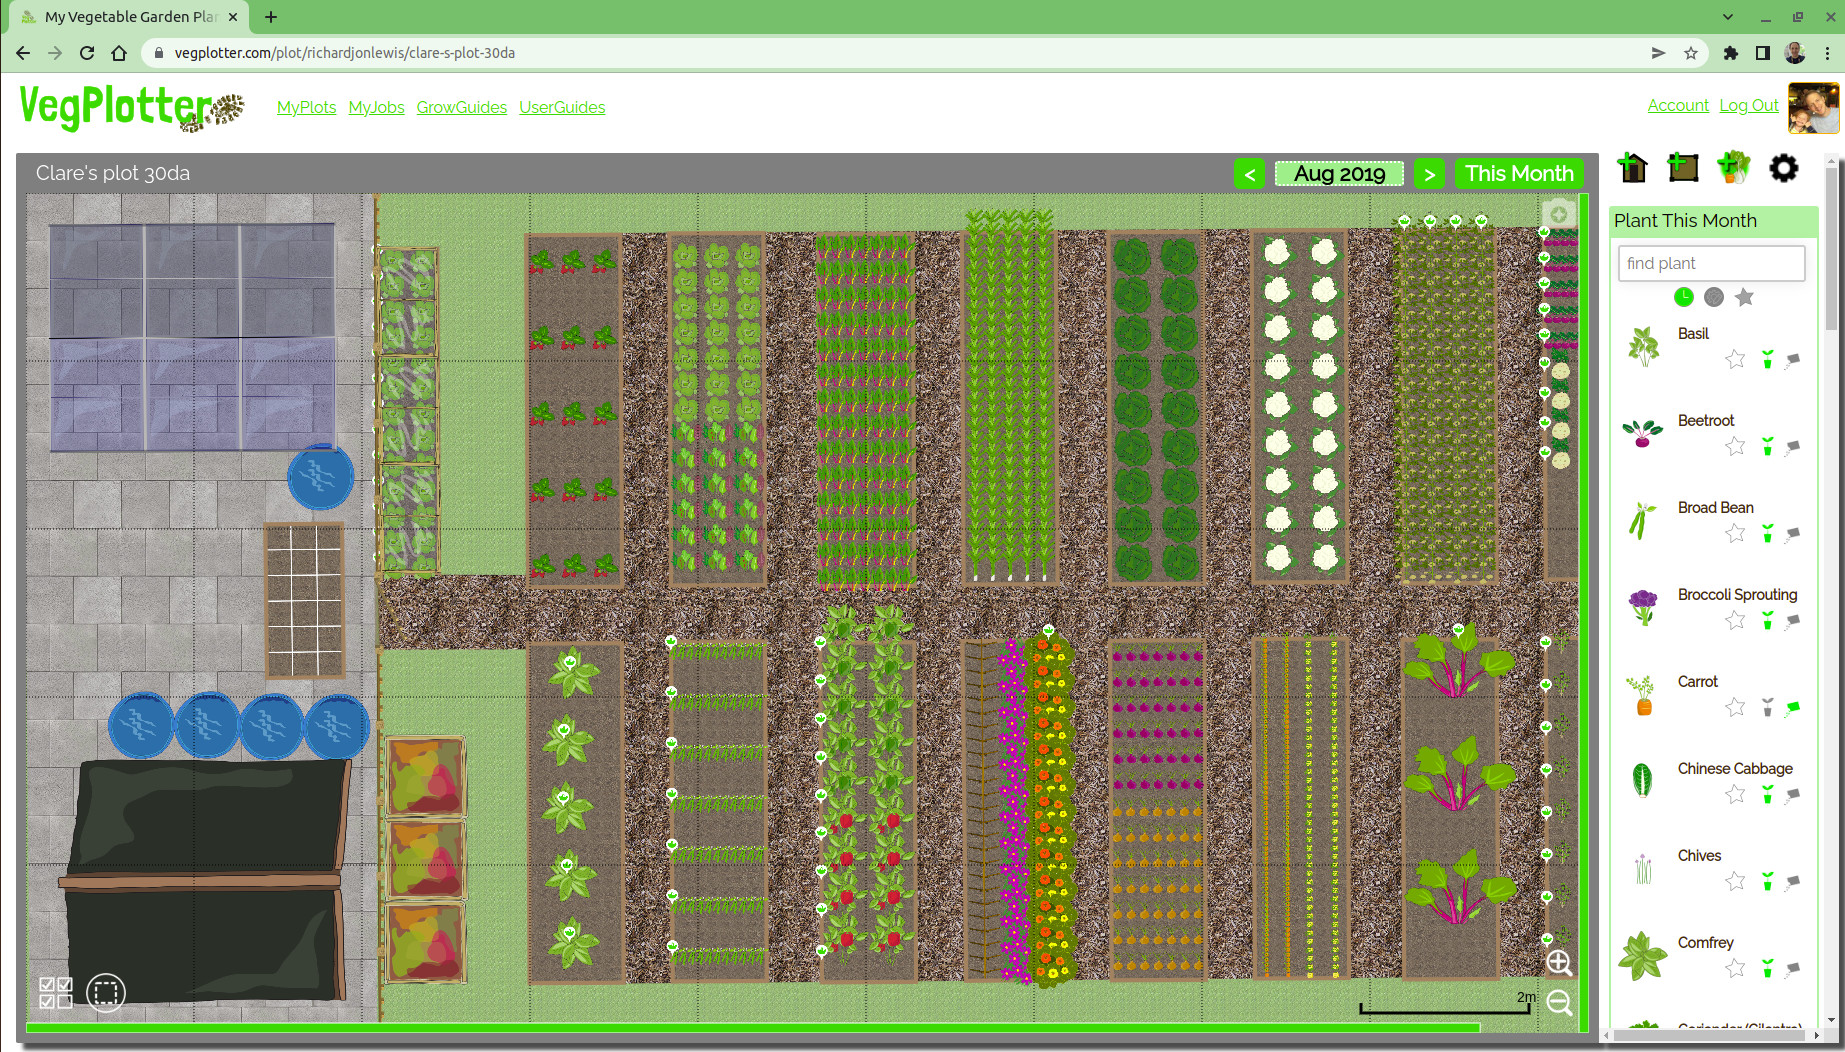 Example School Garden design built in VegPlotter's free garden planning software